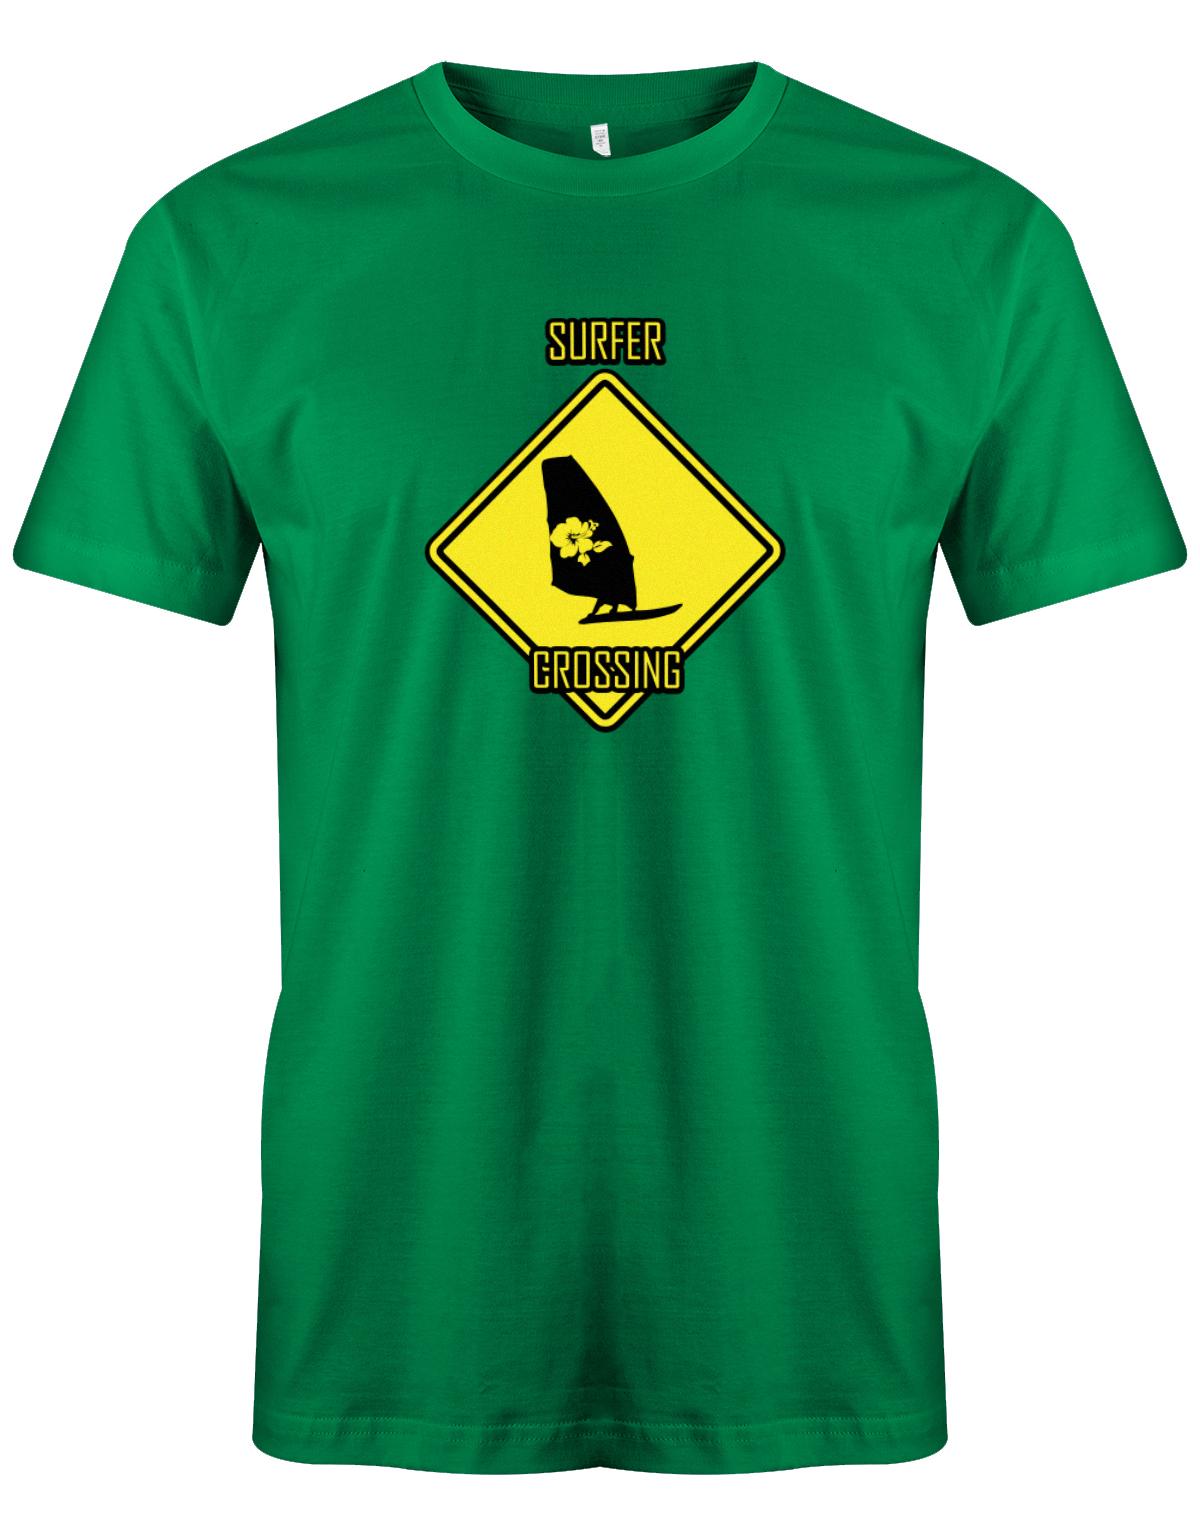 Surfer t-shirt bedruckt mit Achtung Surfer Crossing  Grün